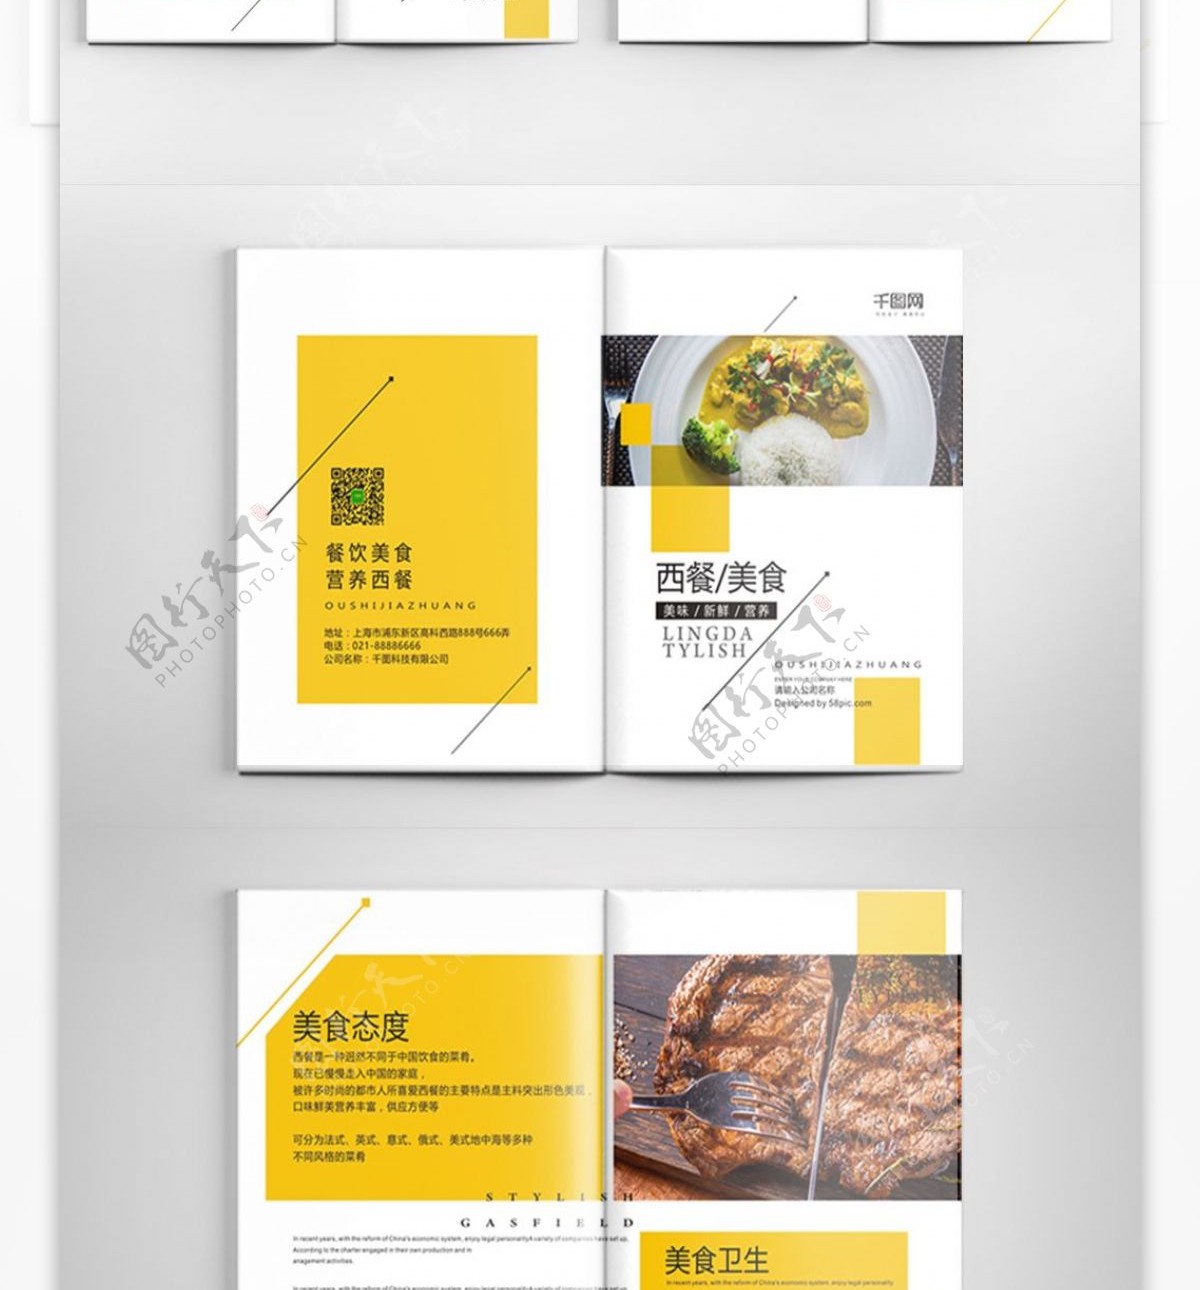 极简创意版式西餐美食餐饮画册